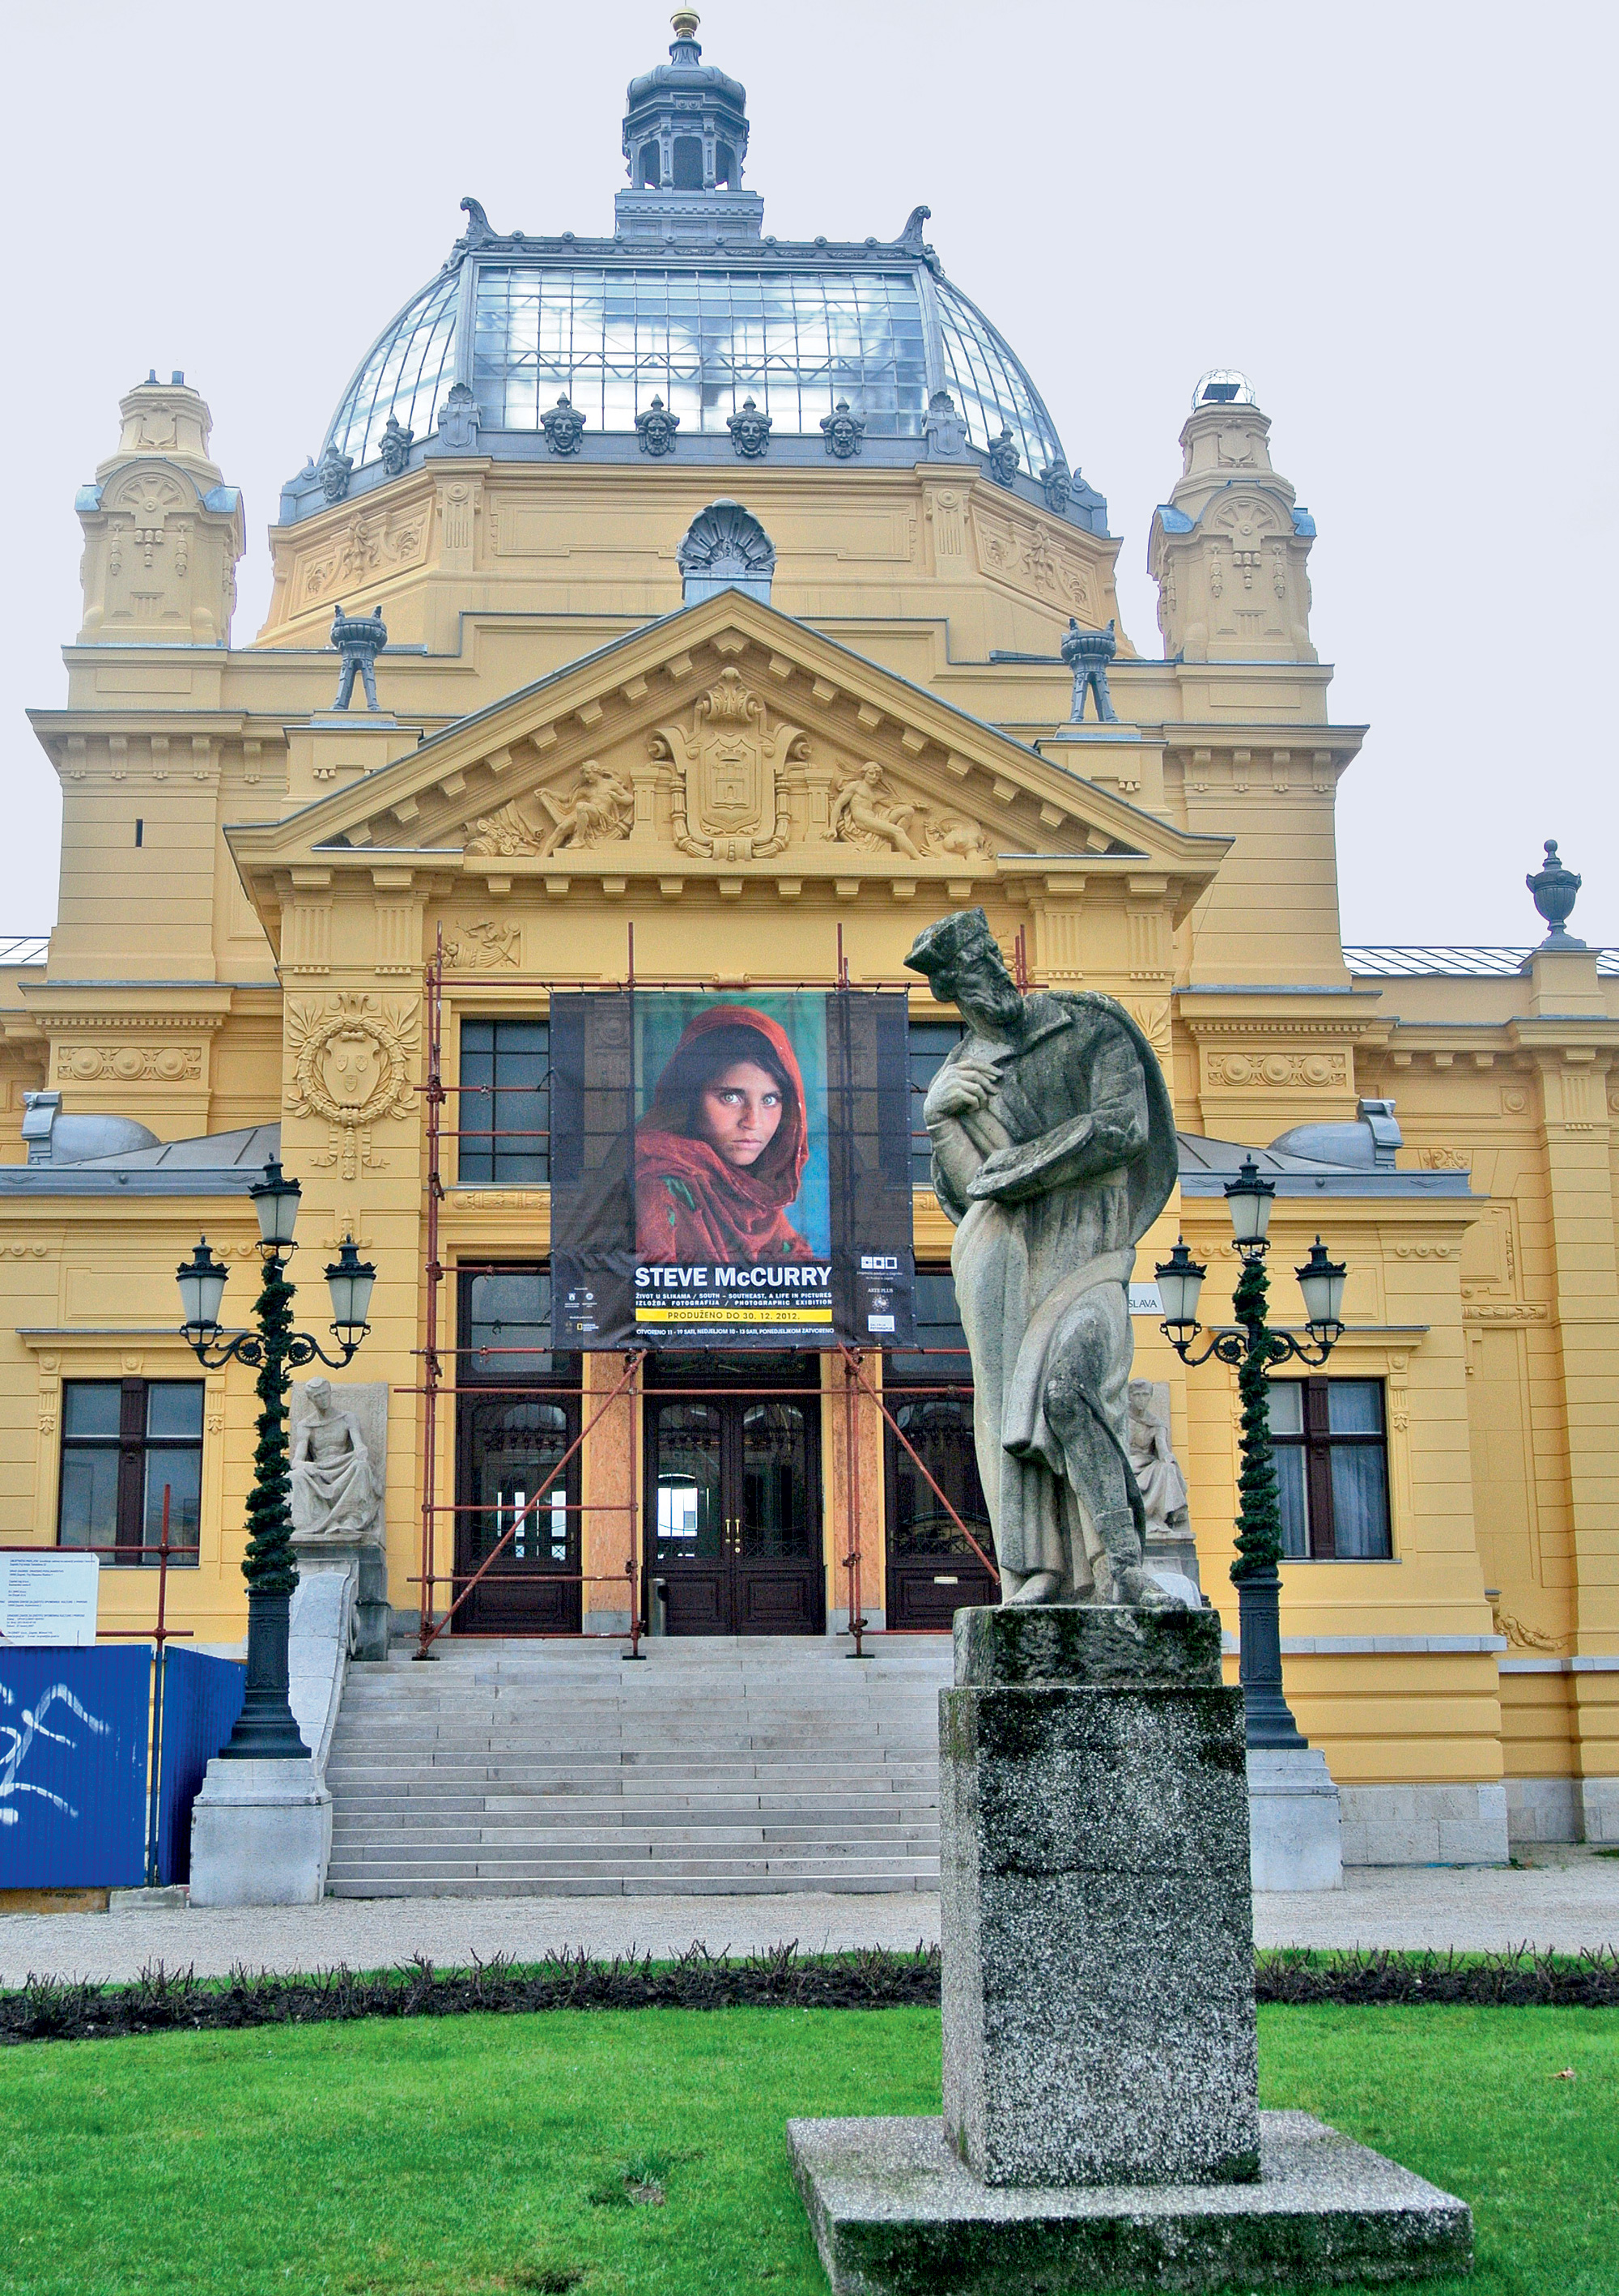 Hrvaško narodno gledališče